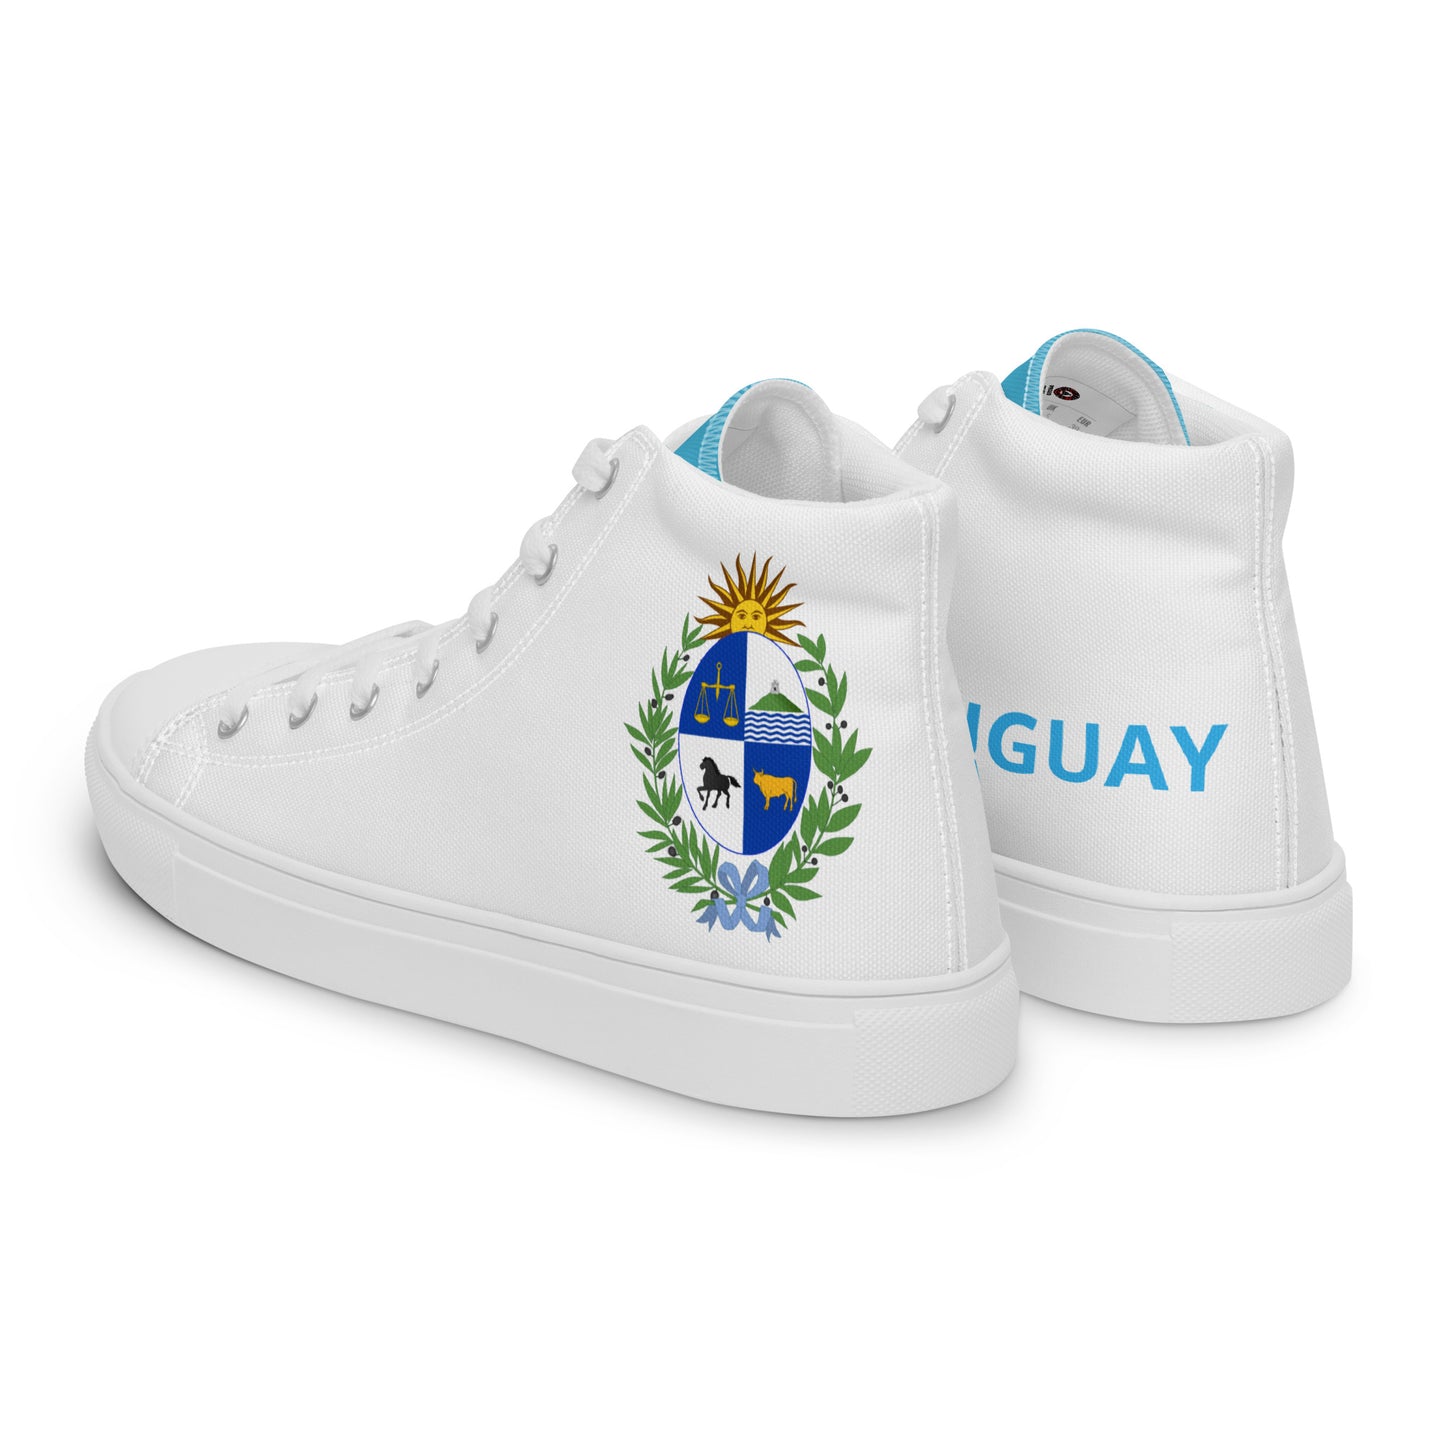 Uruguay - Women - White - High top shoes